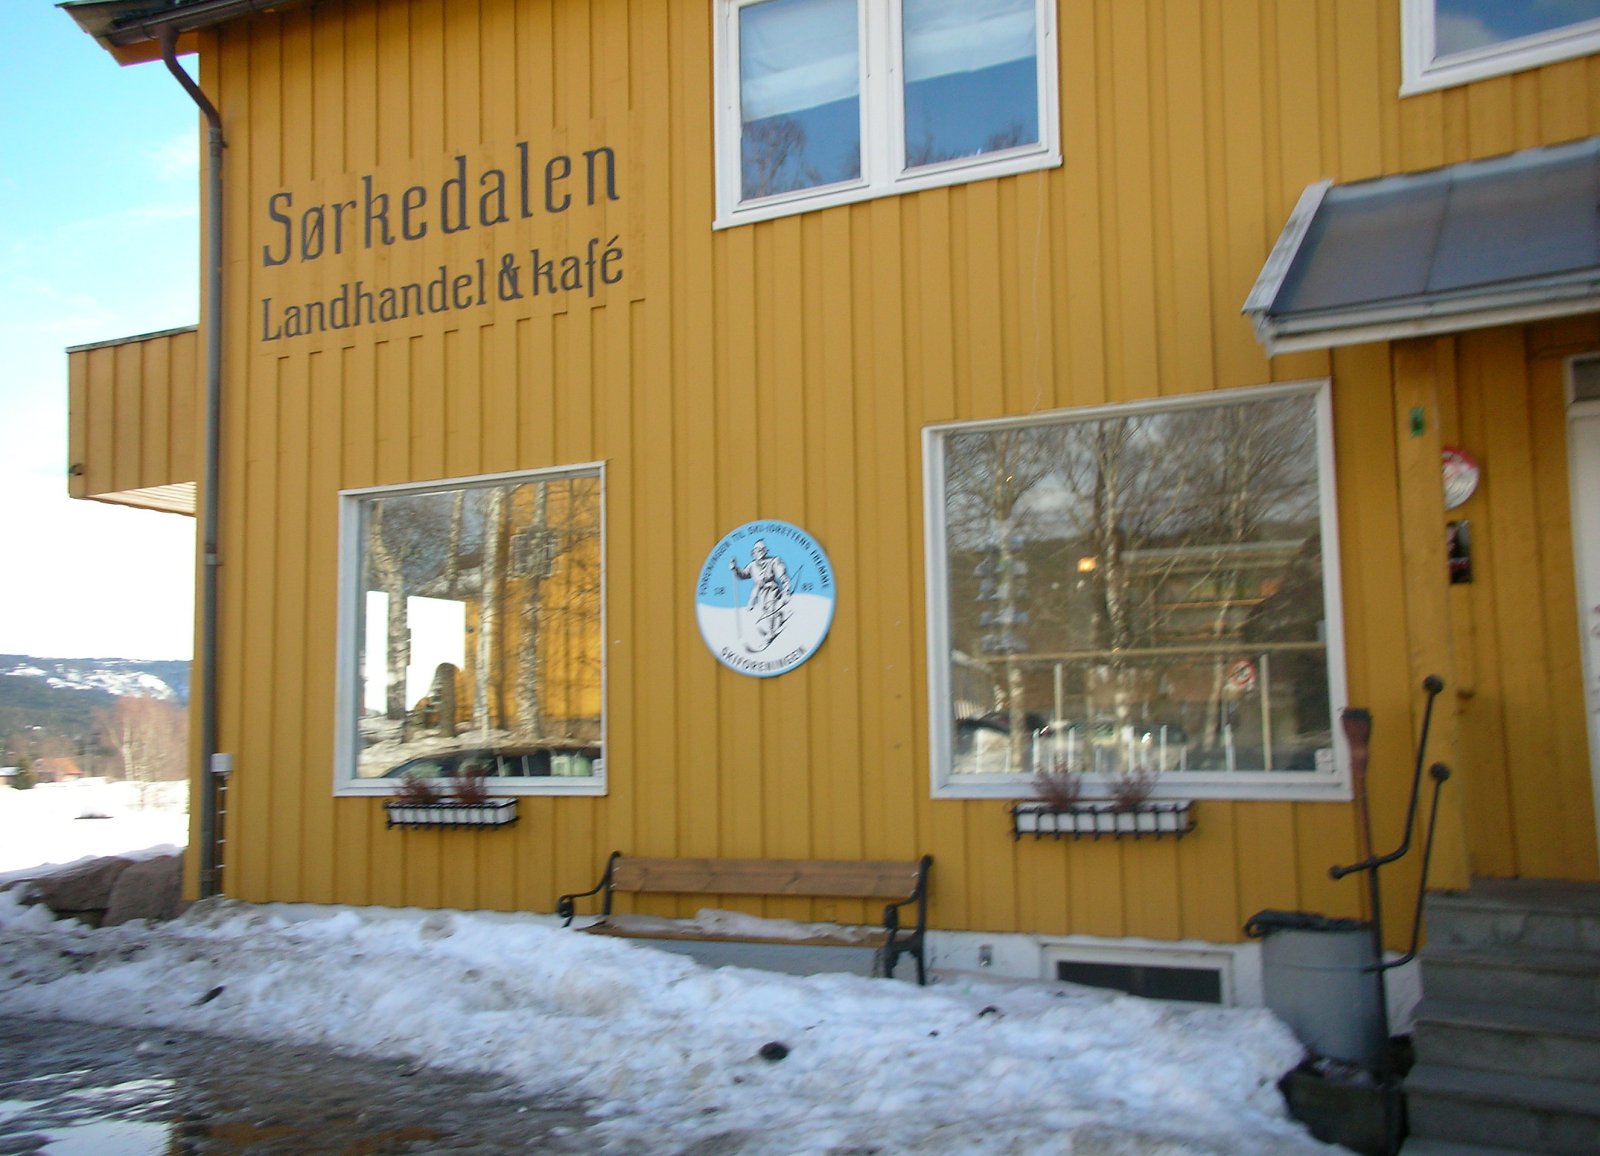 Lagt ut; Påmelding til “after-ski” på Sørkedalen Landhandel 27. februar